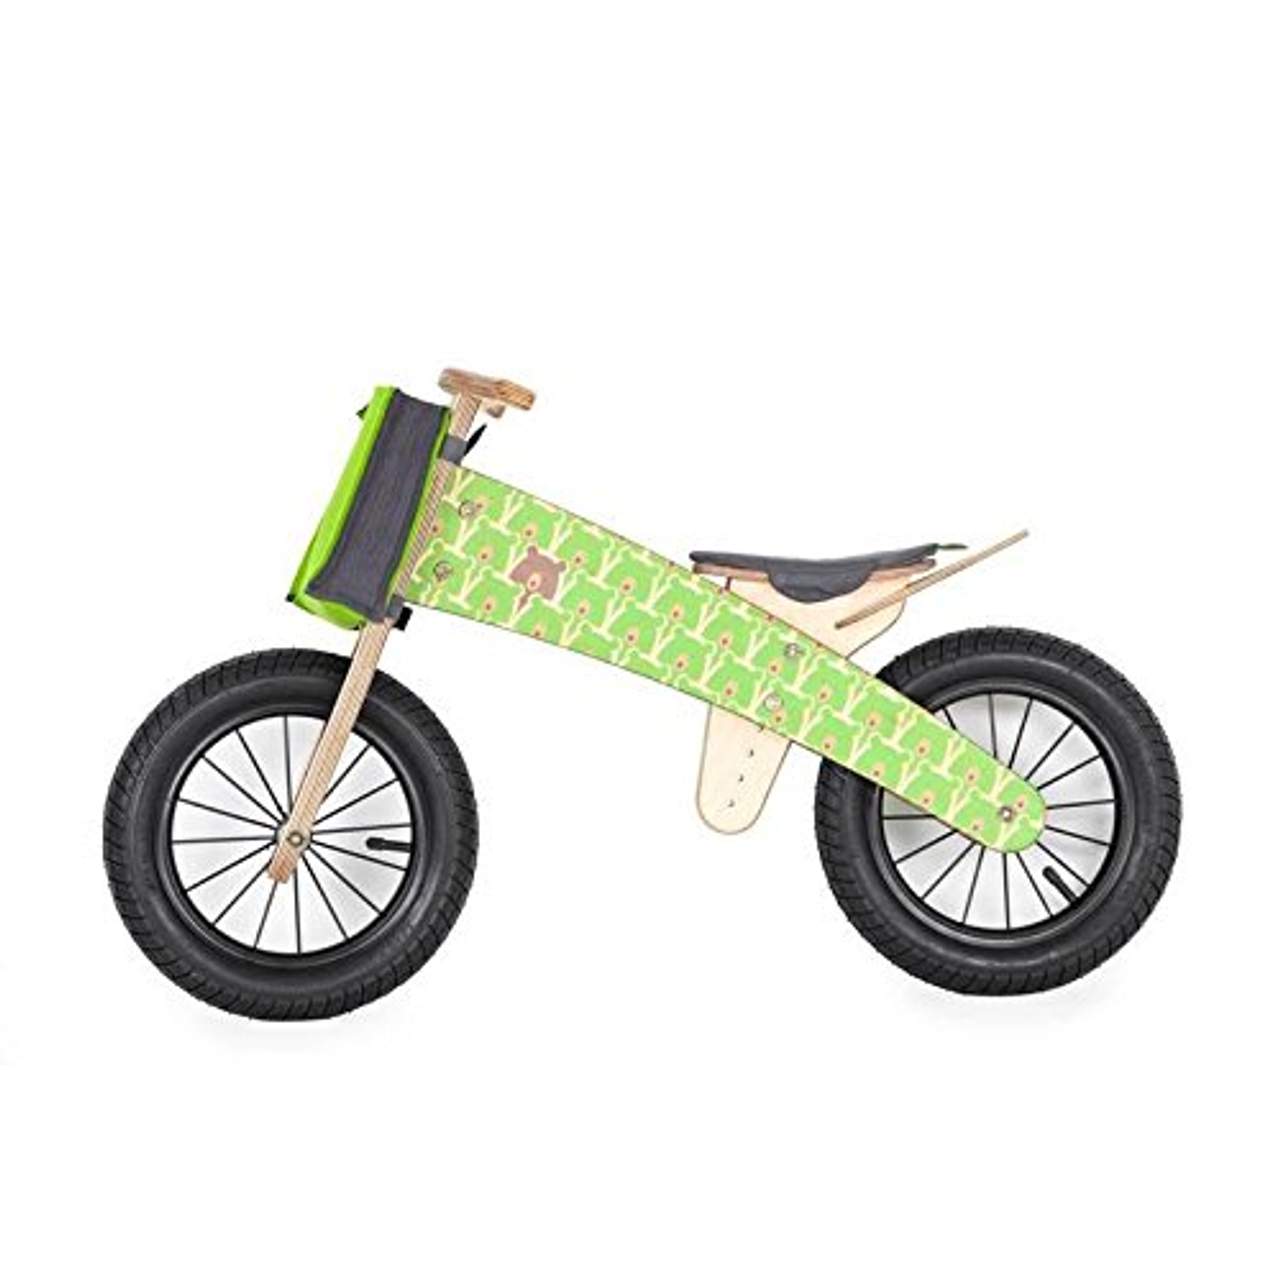 DIPDAP Luxus Lauflernrad Balance aus Holz Kinder Fahrrad Laufrad Grün Bären